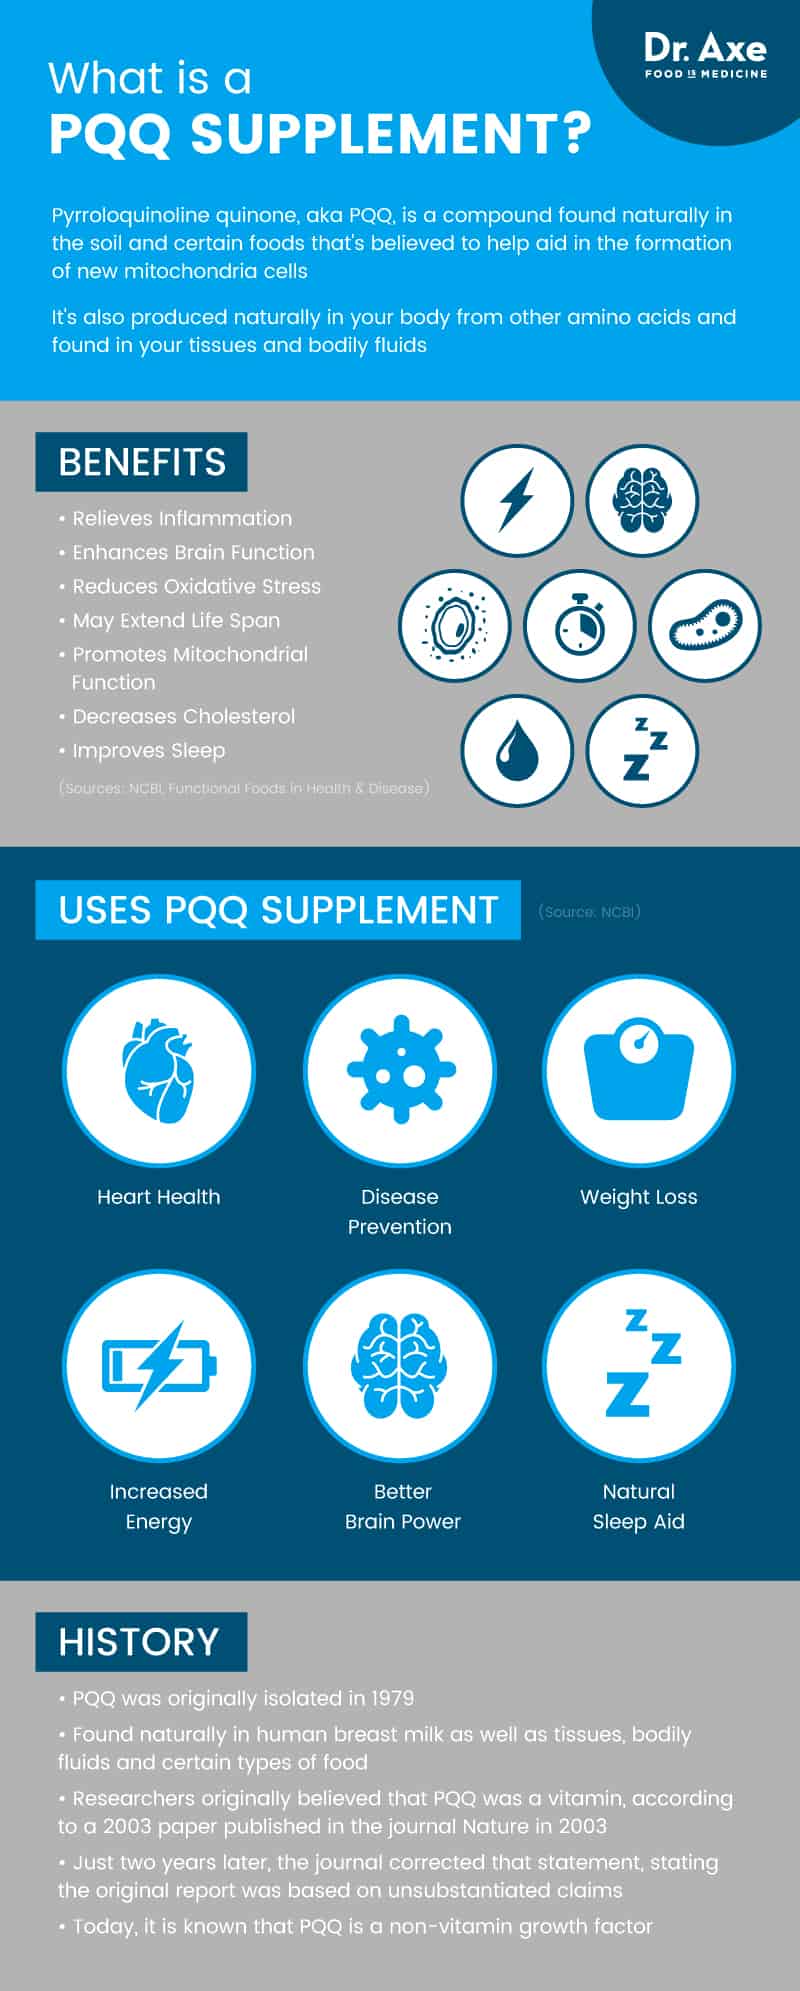 PQQ supplement - Dr. Axe